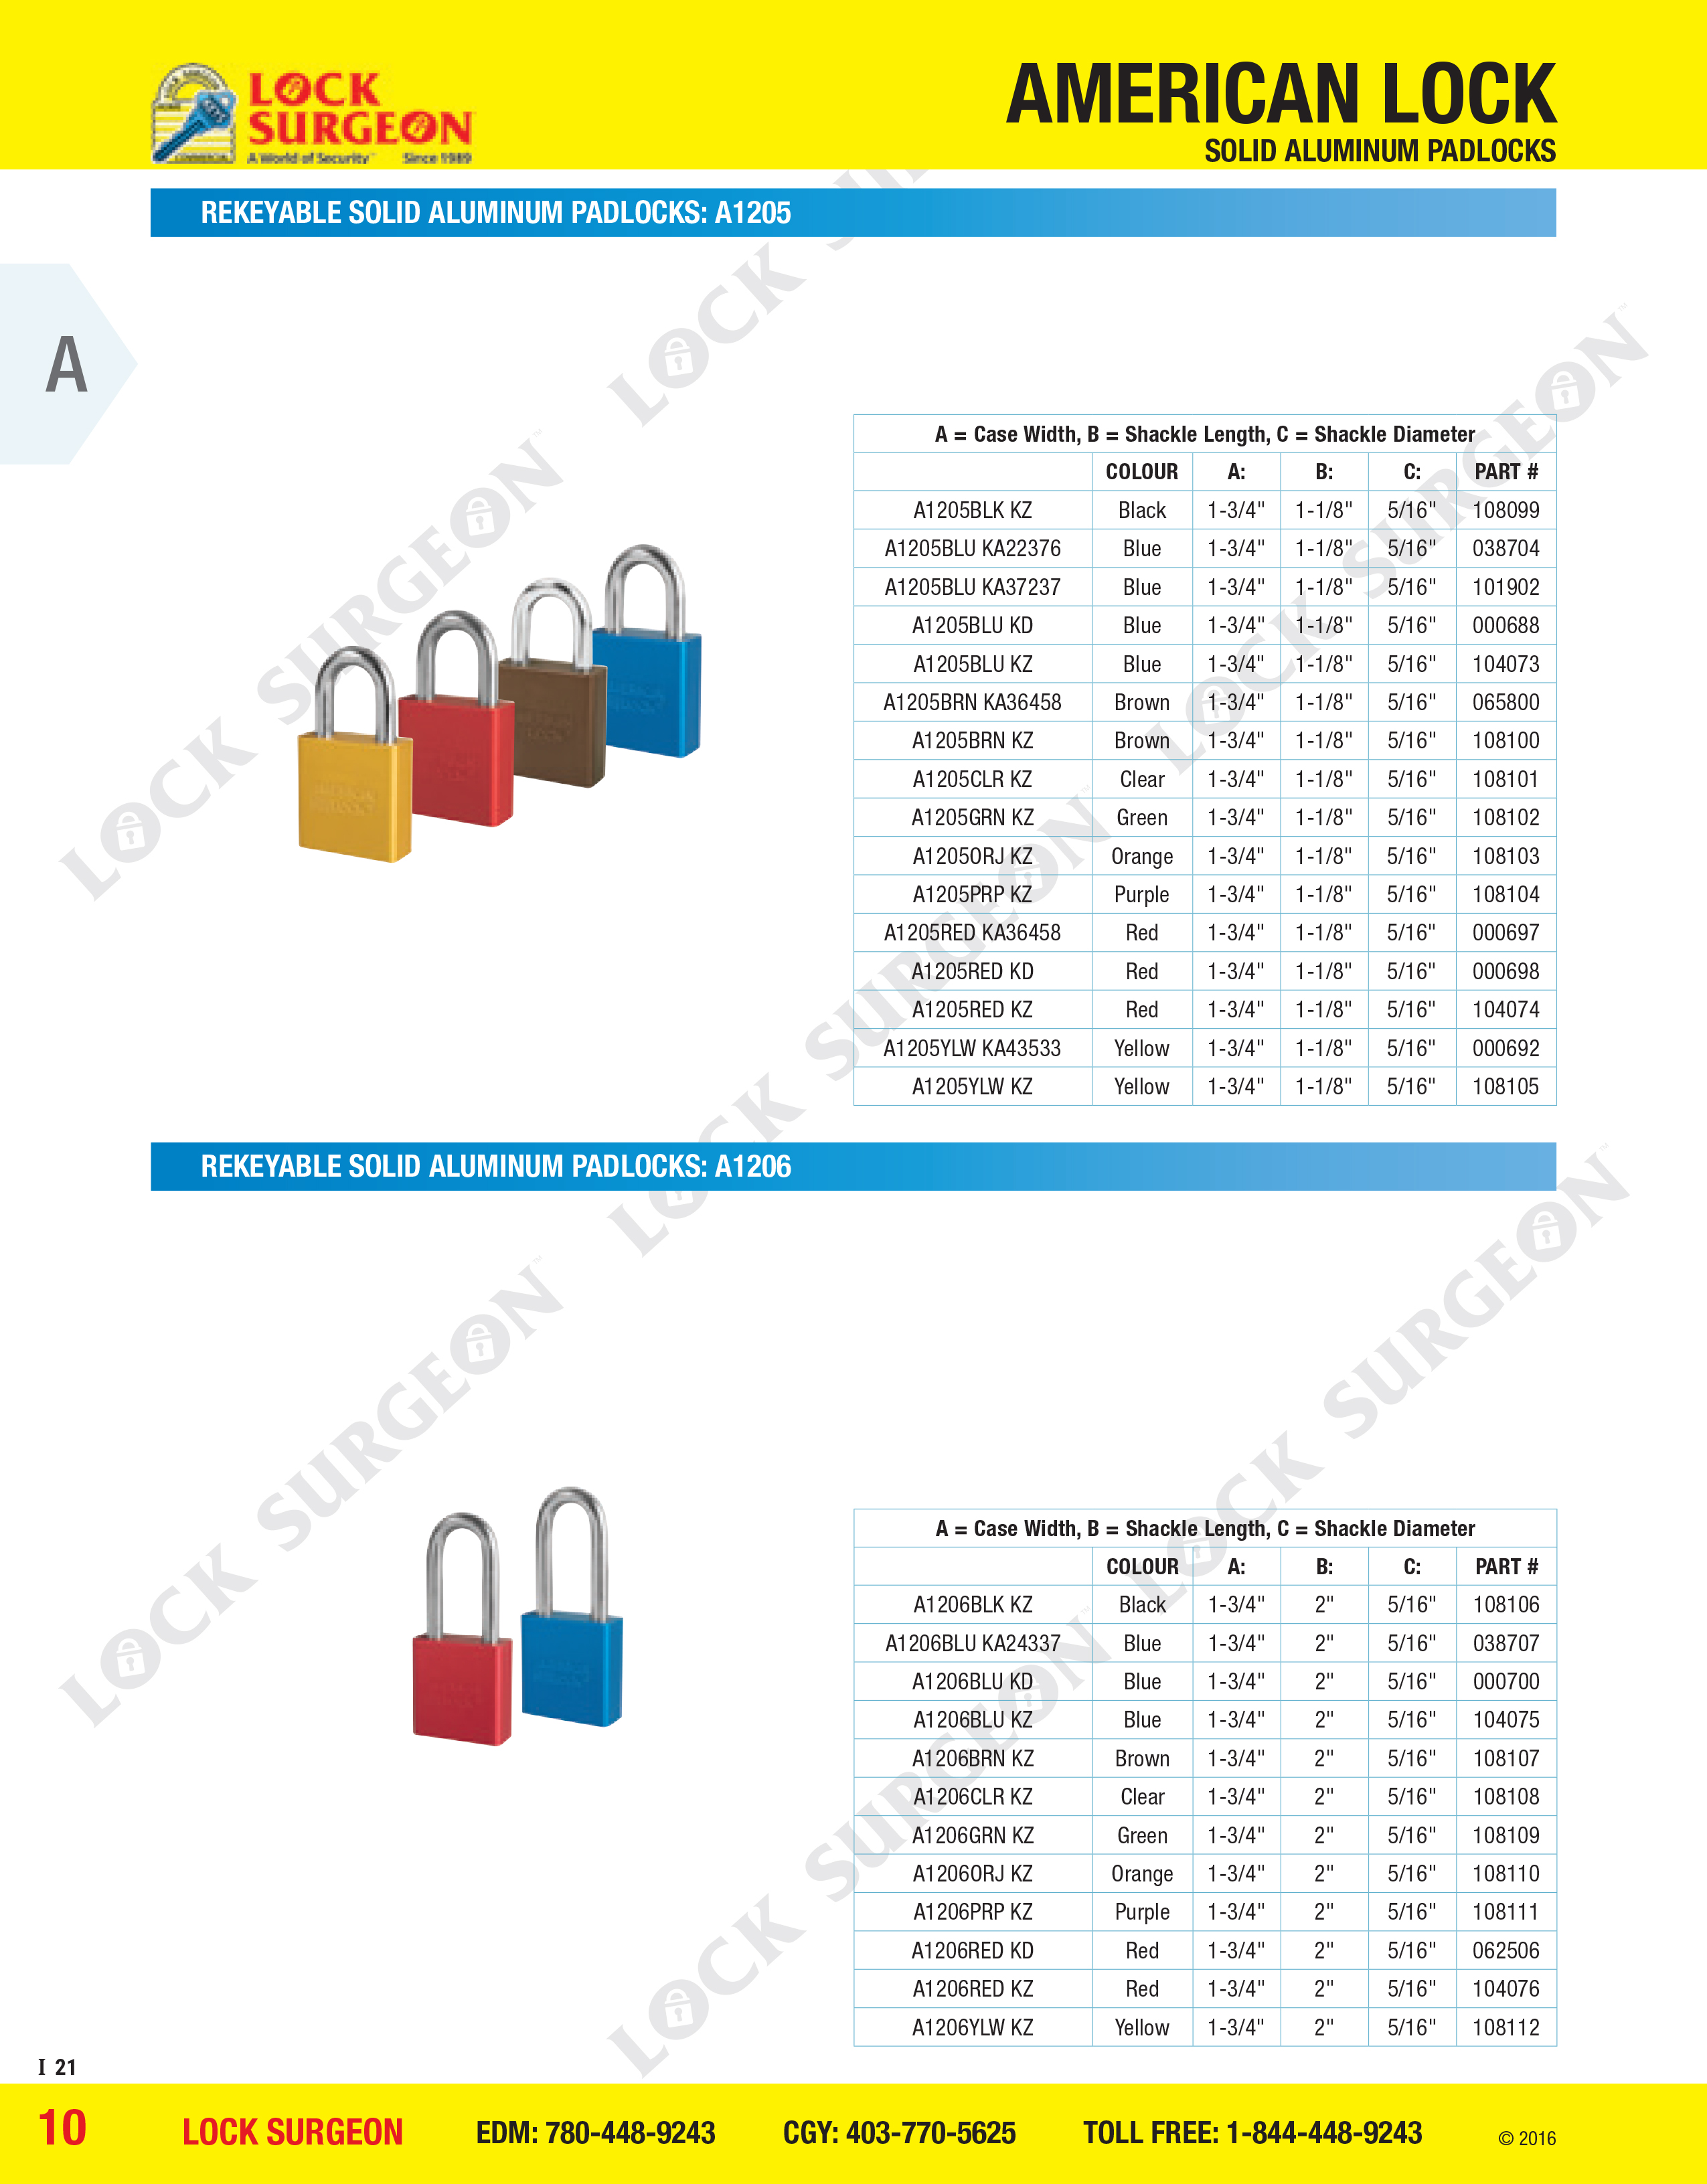 American Lock Rekeyable solid aluminium padlocks A1205 or A1206 series